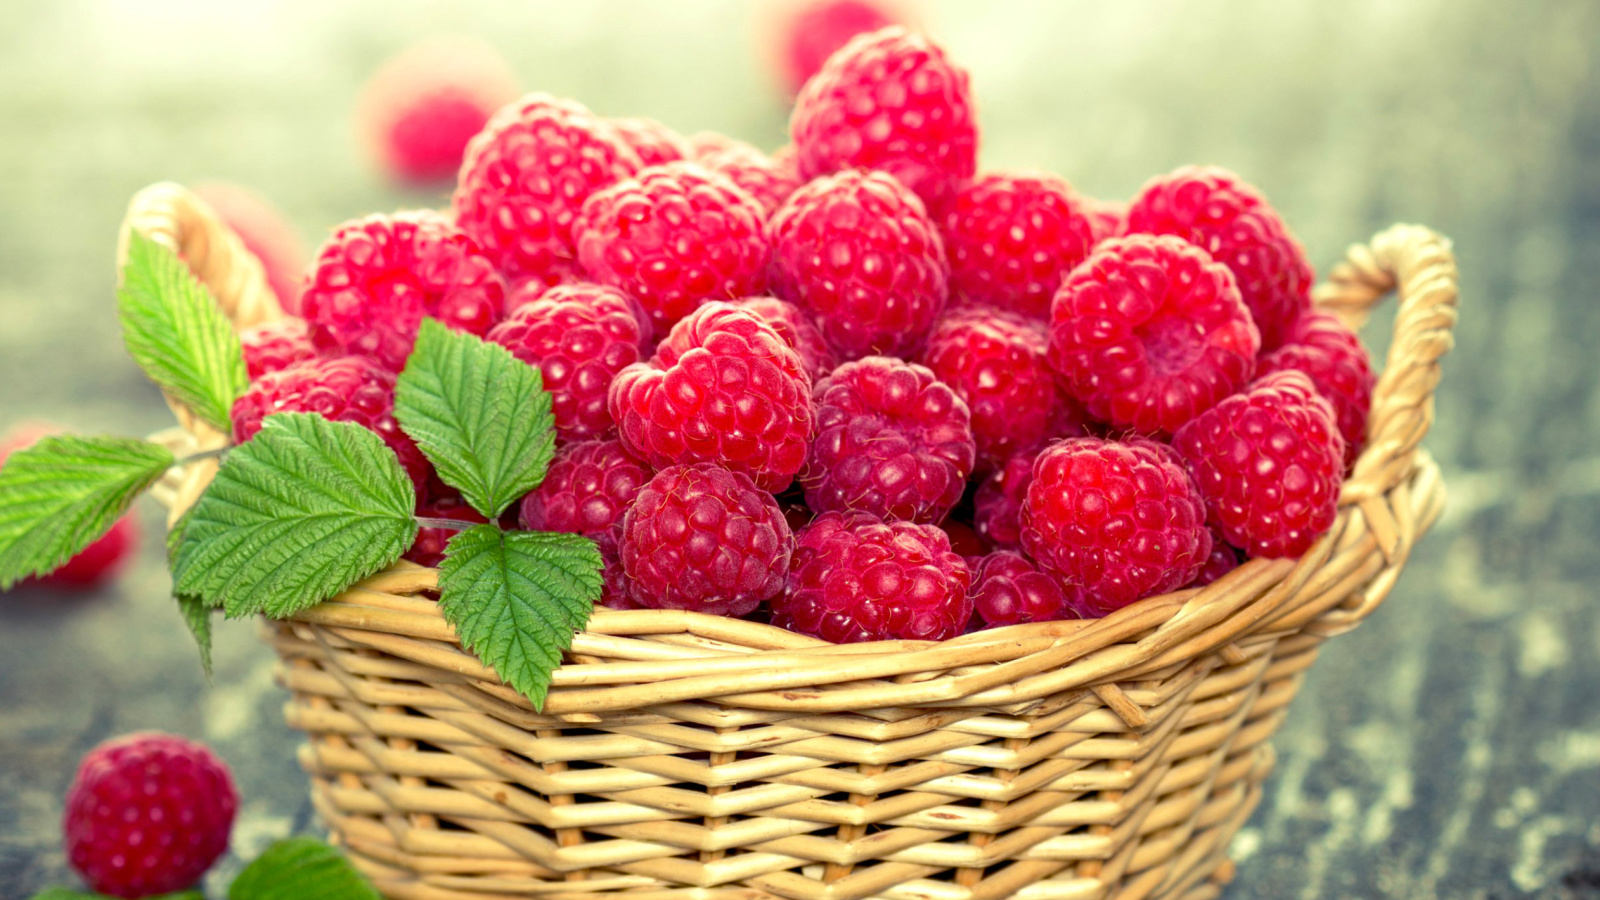 Sfondi Basket with raspberries 1600x900